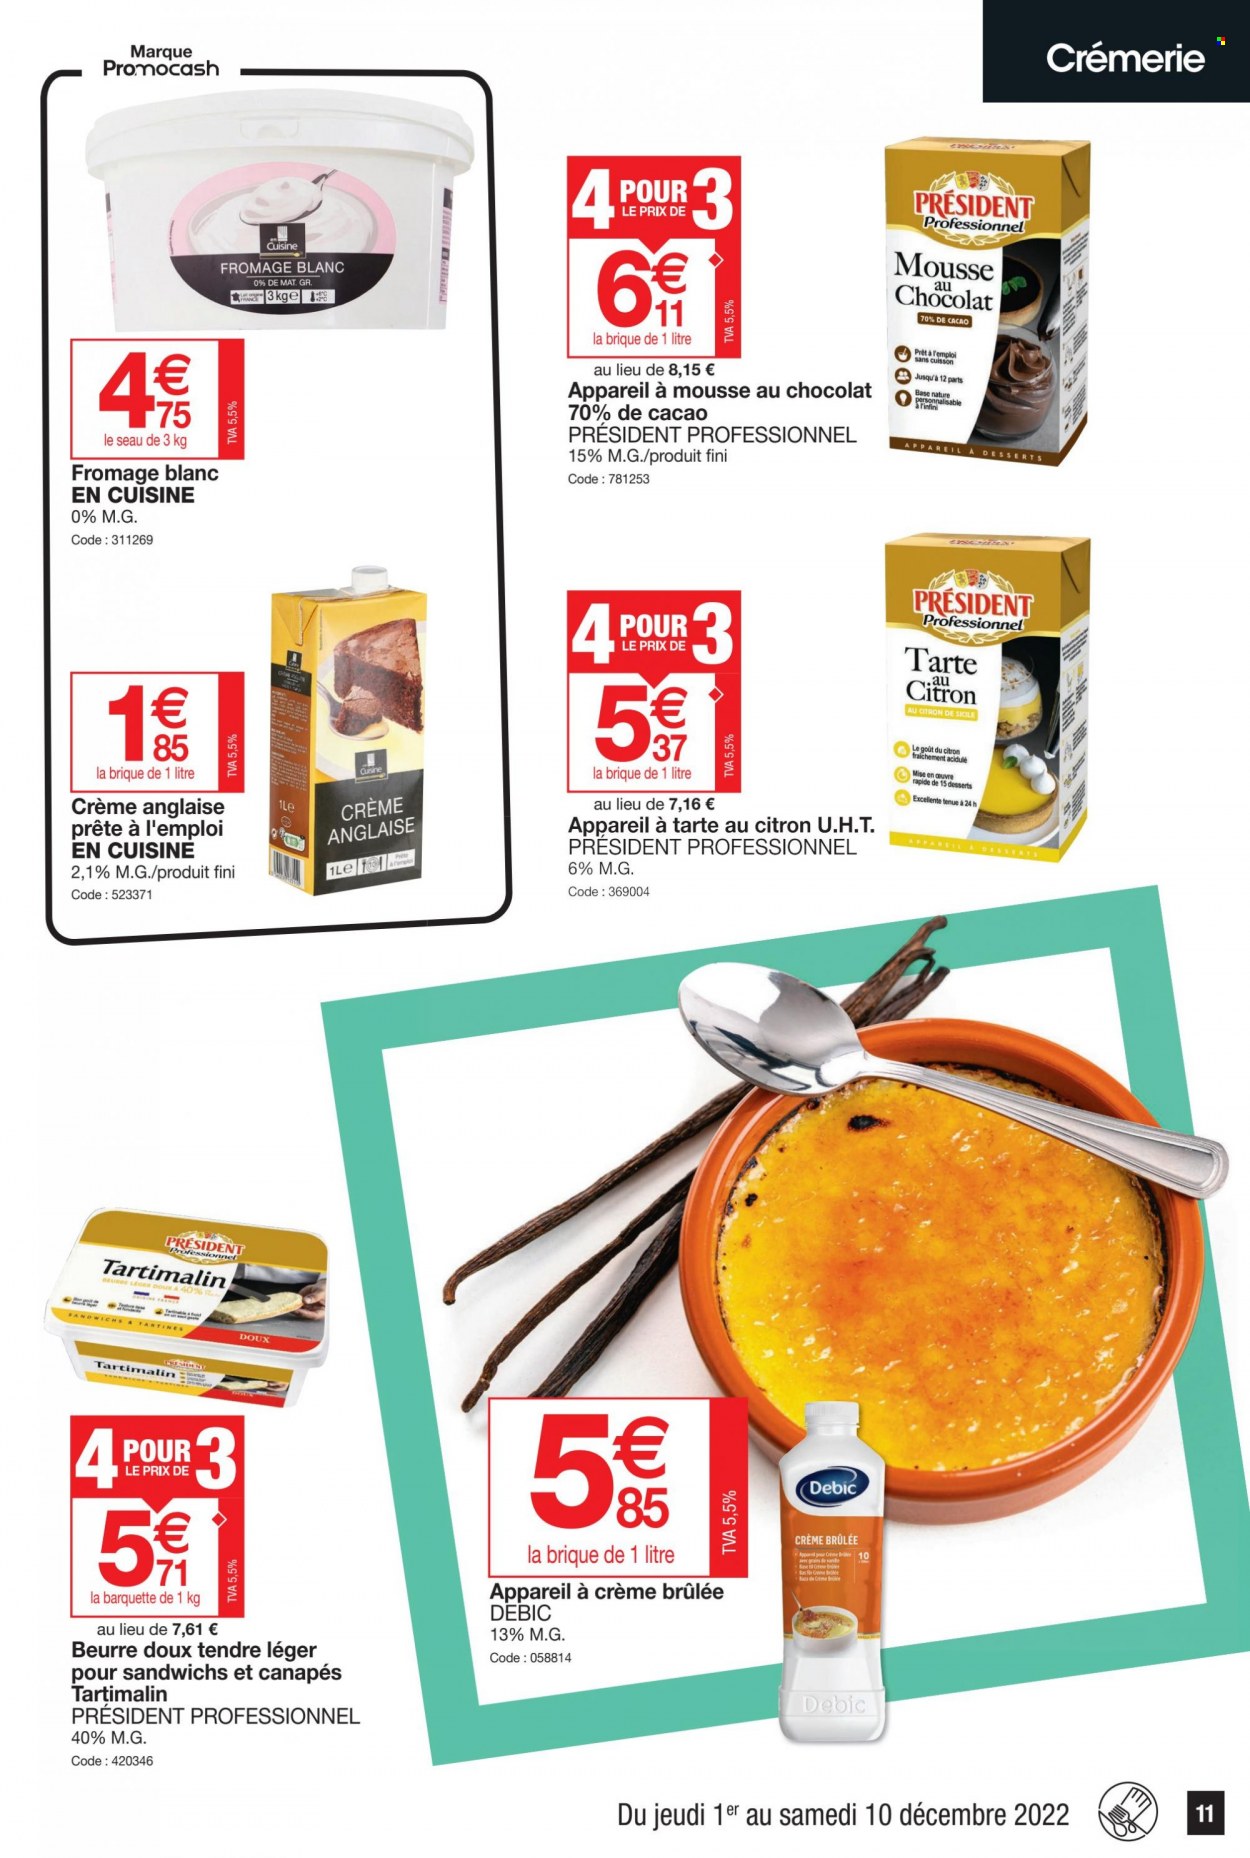 thumbnail - Catalogue Promocash - 01/12/2022 - 10/12/2022 - Produits soldés - fromage, fromage blanc, Président, mousse au chocolat, beurre. Page 11.